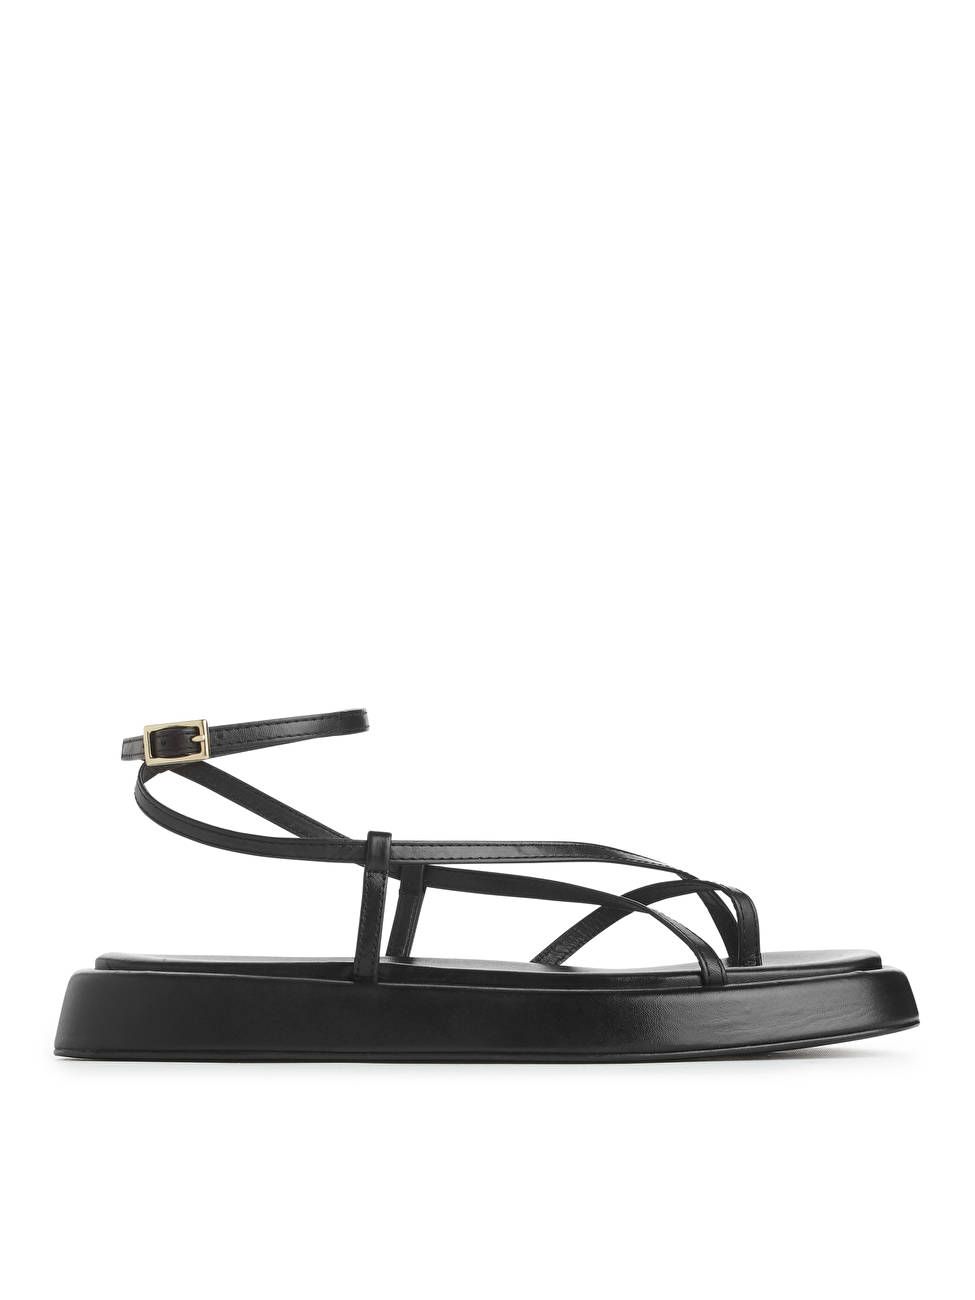 Leather Strap Sandals - Black - ARKET NL | ARKET (US&UK)